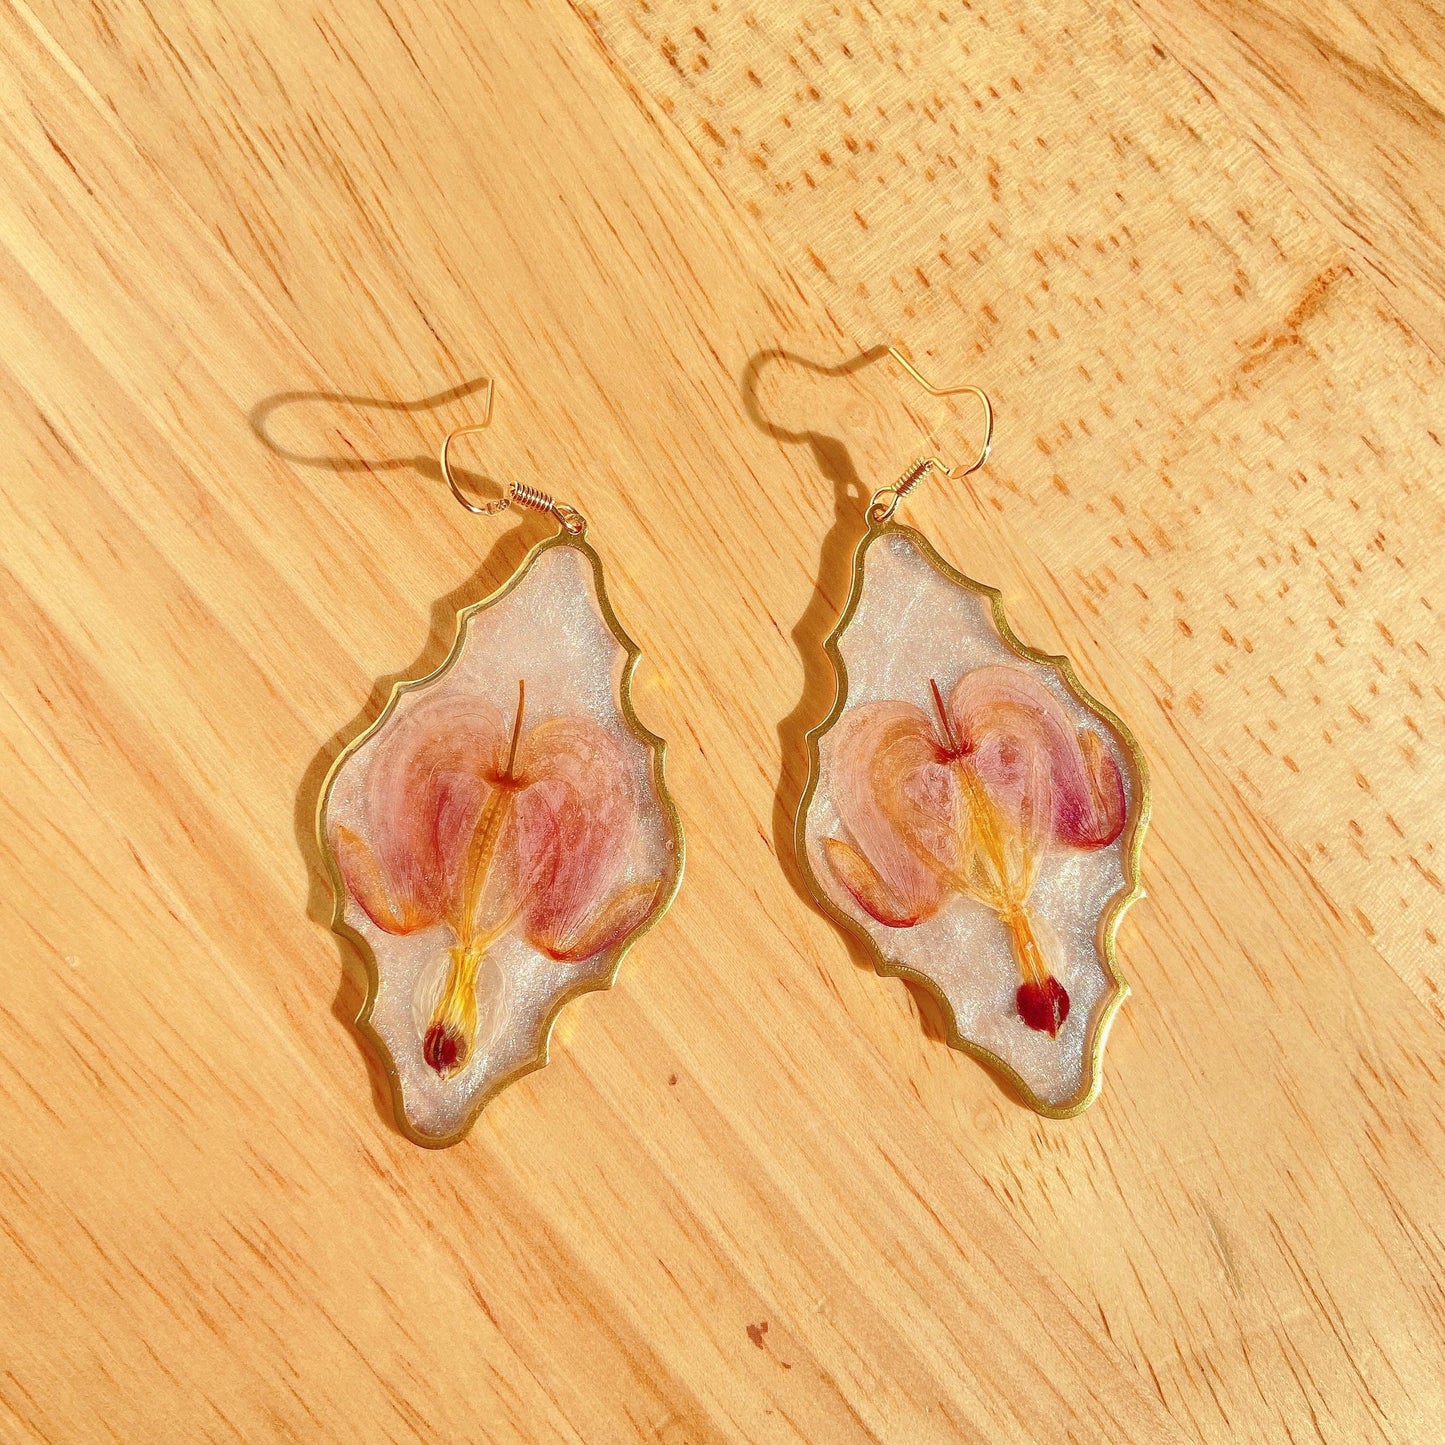 Bleeding heart earrings